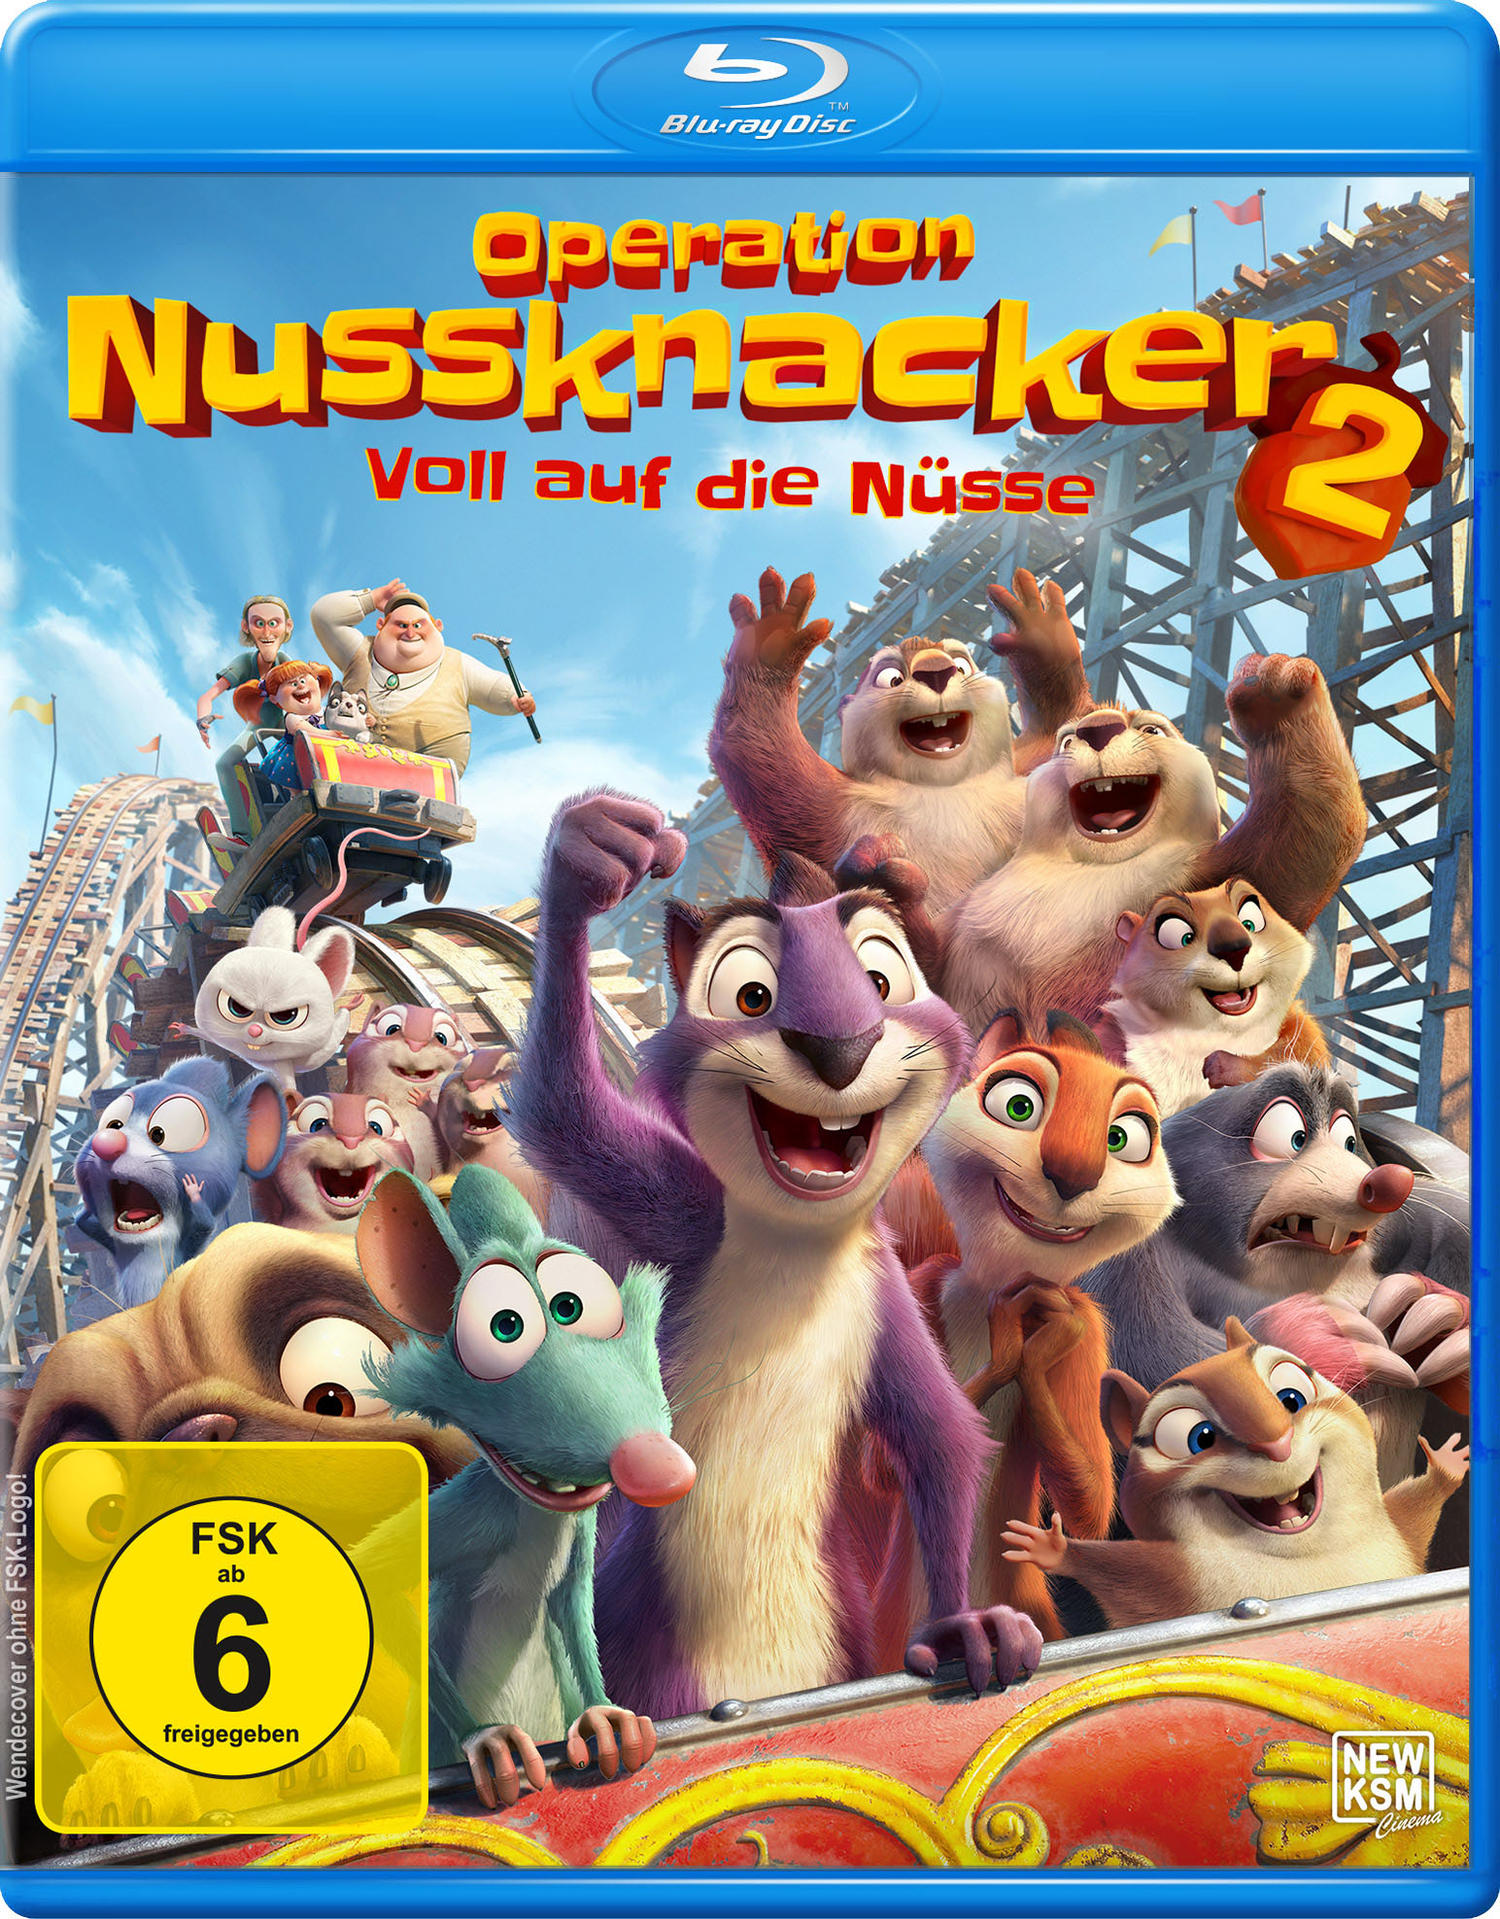 Operation Nussknacker Blu-ray Die Nüsse 2 Voll Auf